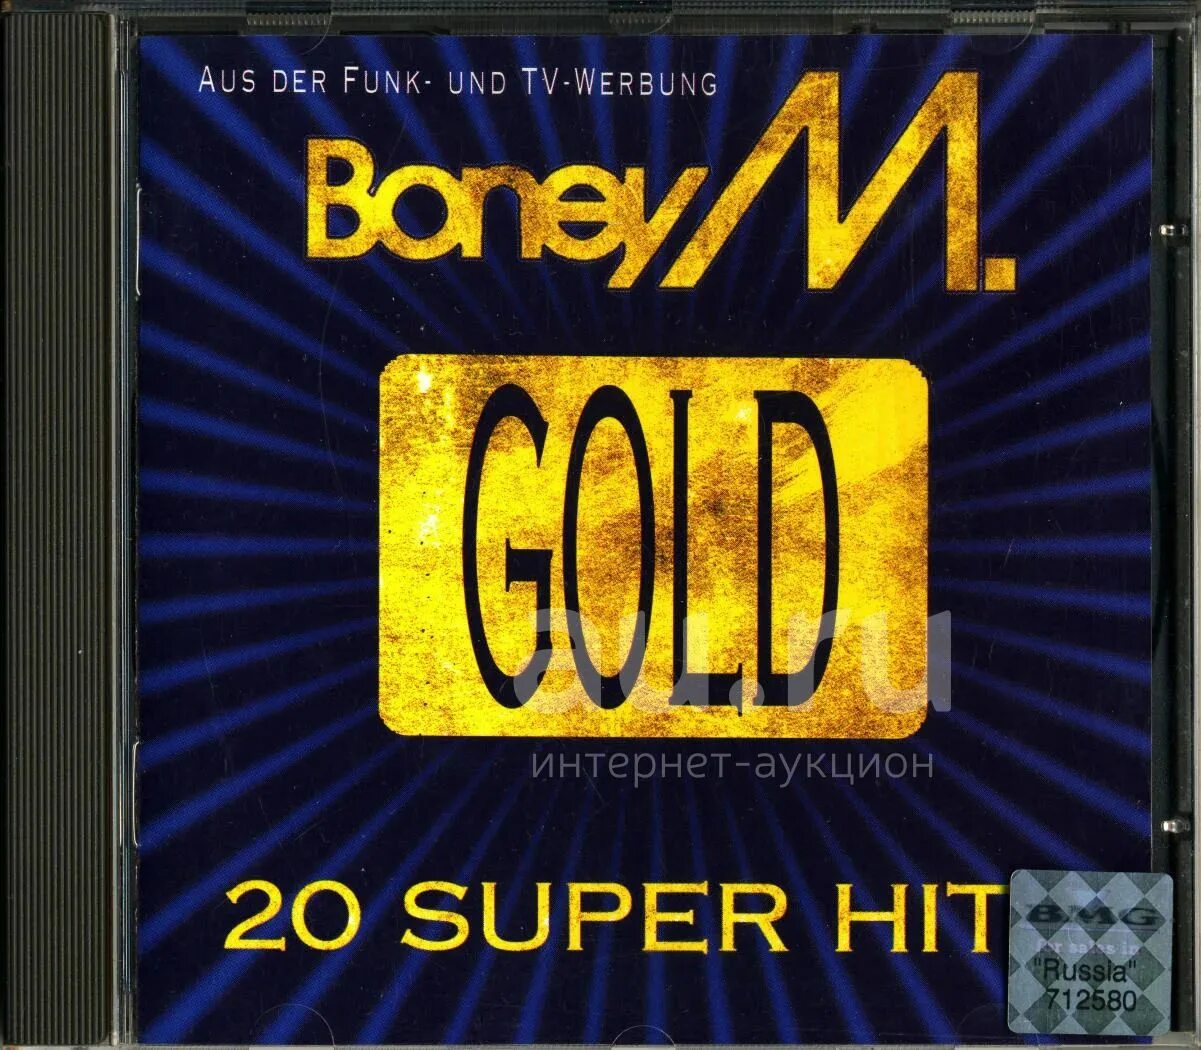 Gotta go home boney. Boney m Gold 20 super Hits. Boney m Gold 20 super Hits пластинка. Boney m Gold 20 super Hits 1992 пластинка. Boney m 20 super Hits 2.